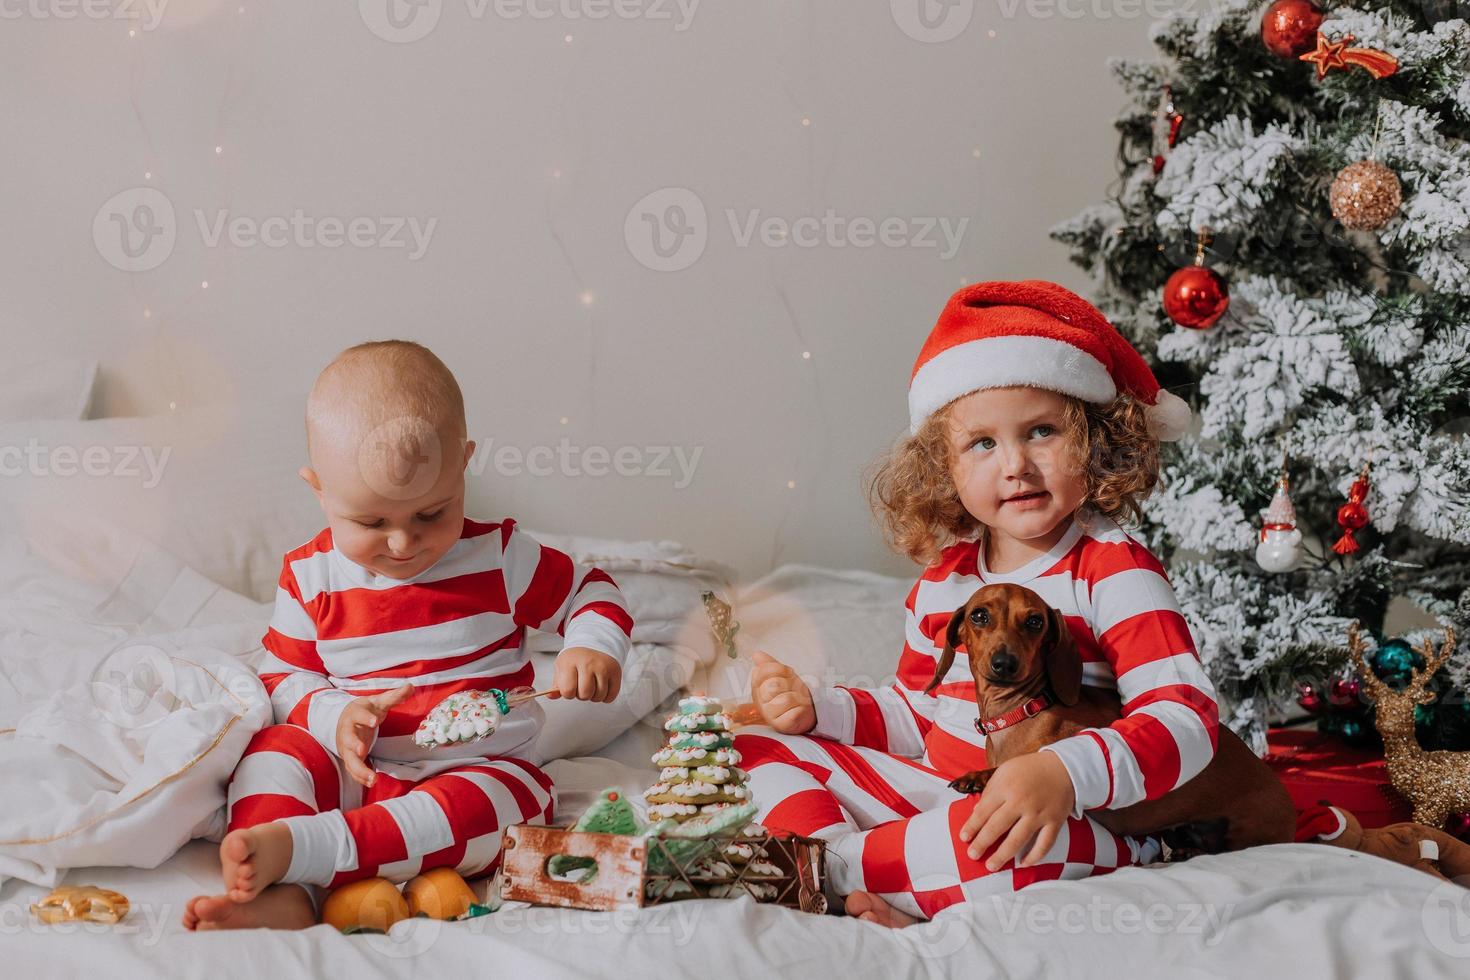 les enfants en pyjama rouge et blanc assis dans leur lit partagent des bonbons de noël entre eux et avec leur chien. frère et soeur, garçon et fille célèbrent la nouvelle année. espace pour le texte. photo de haute qualité